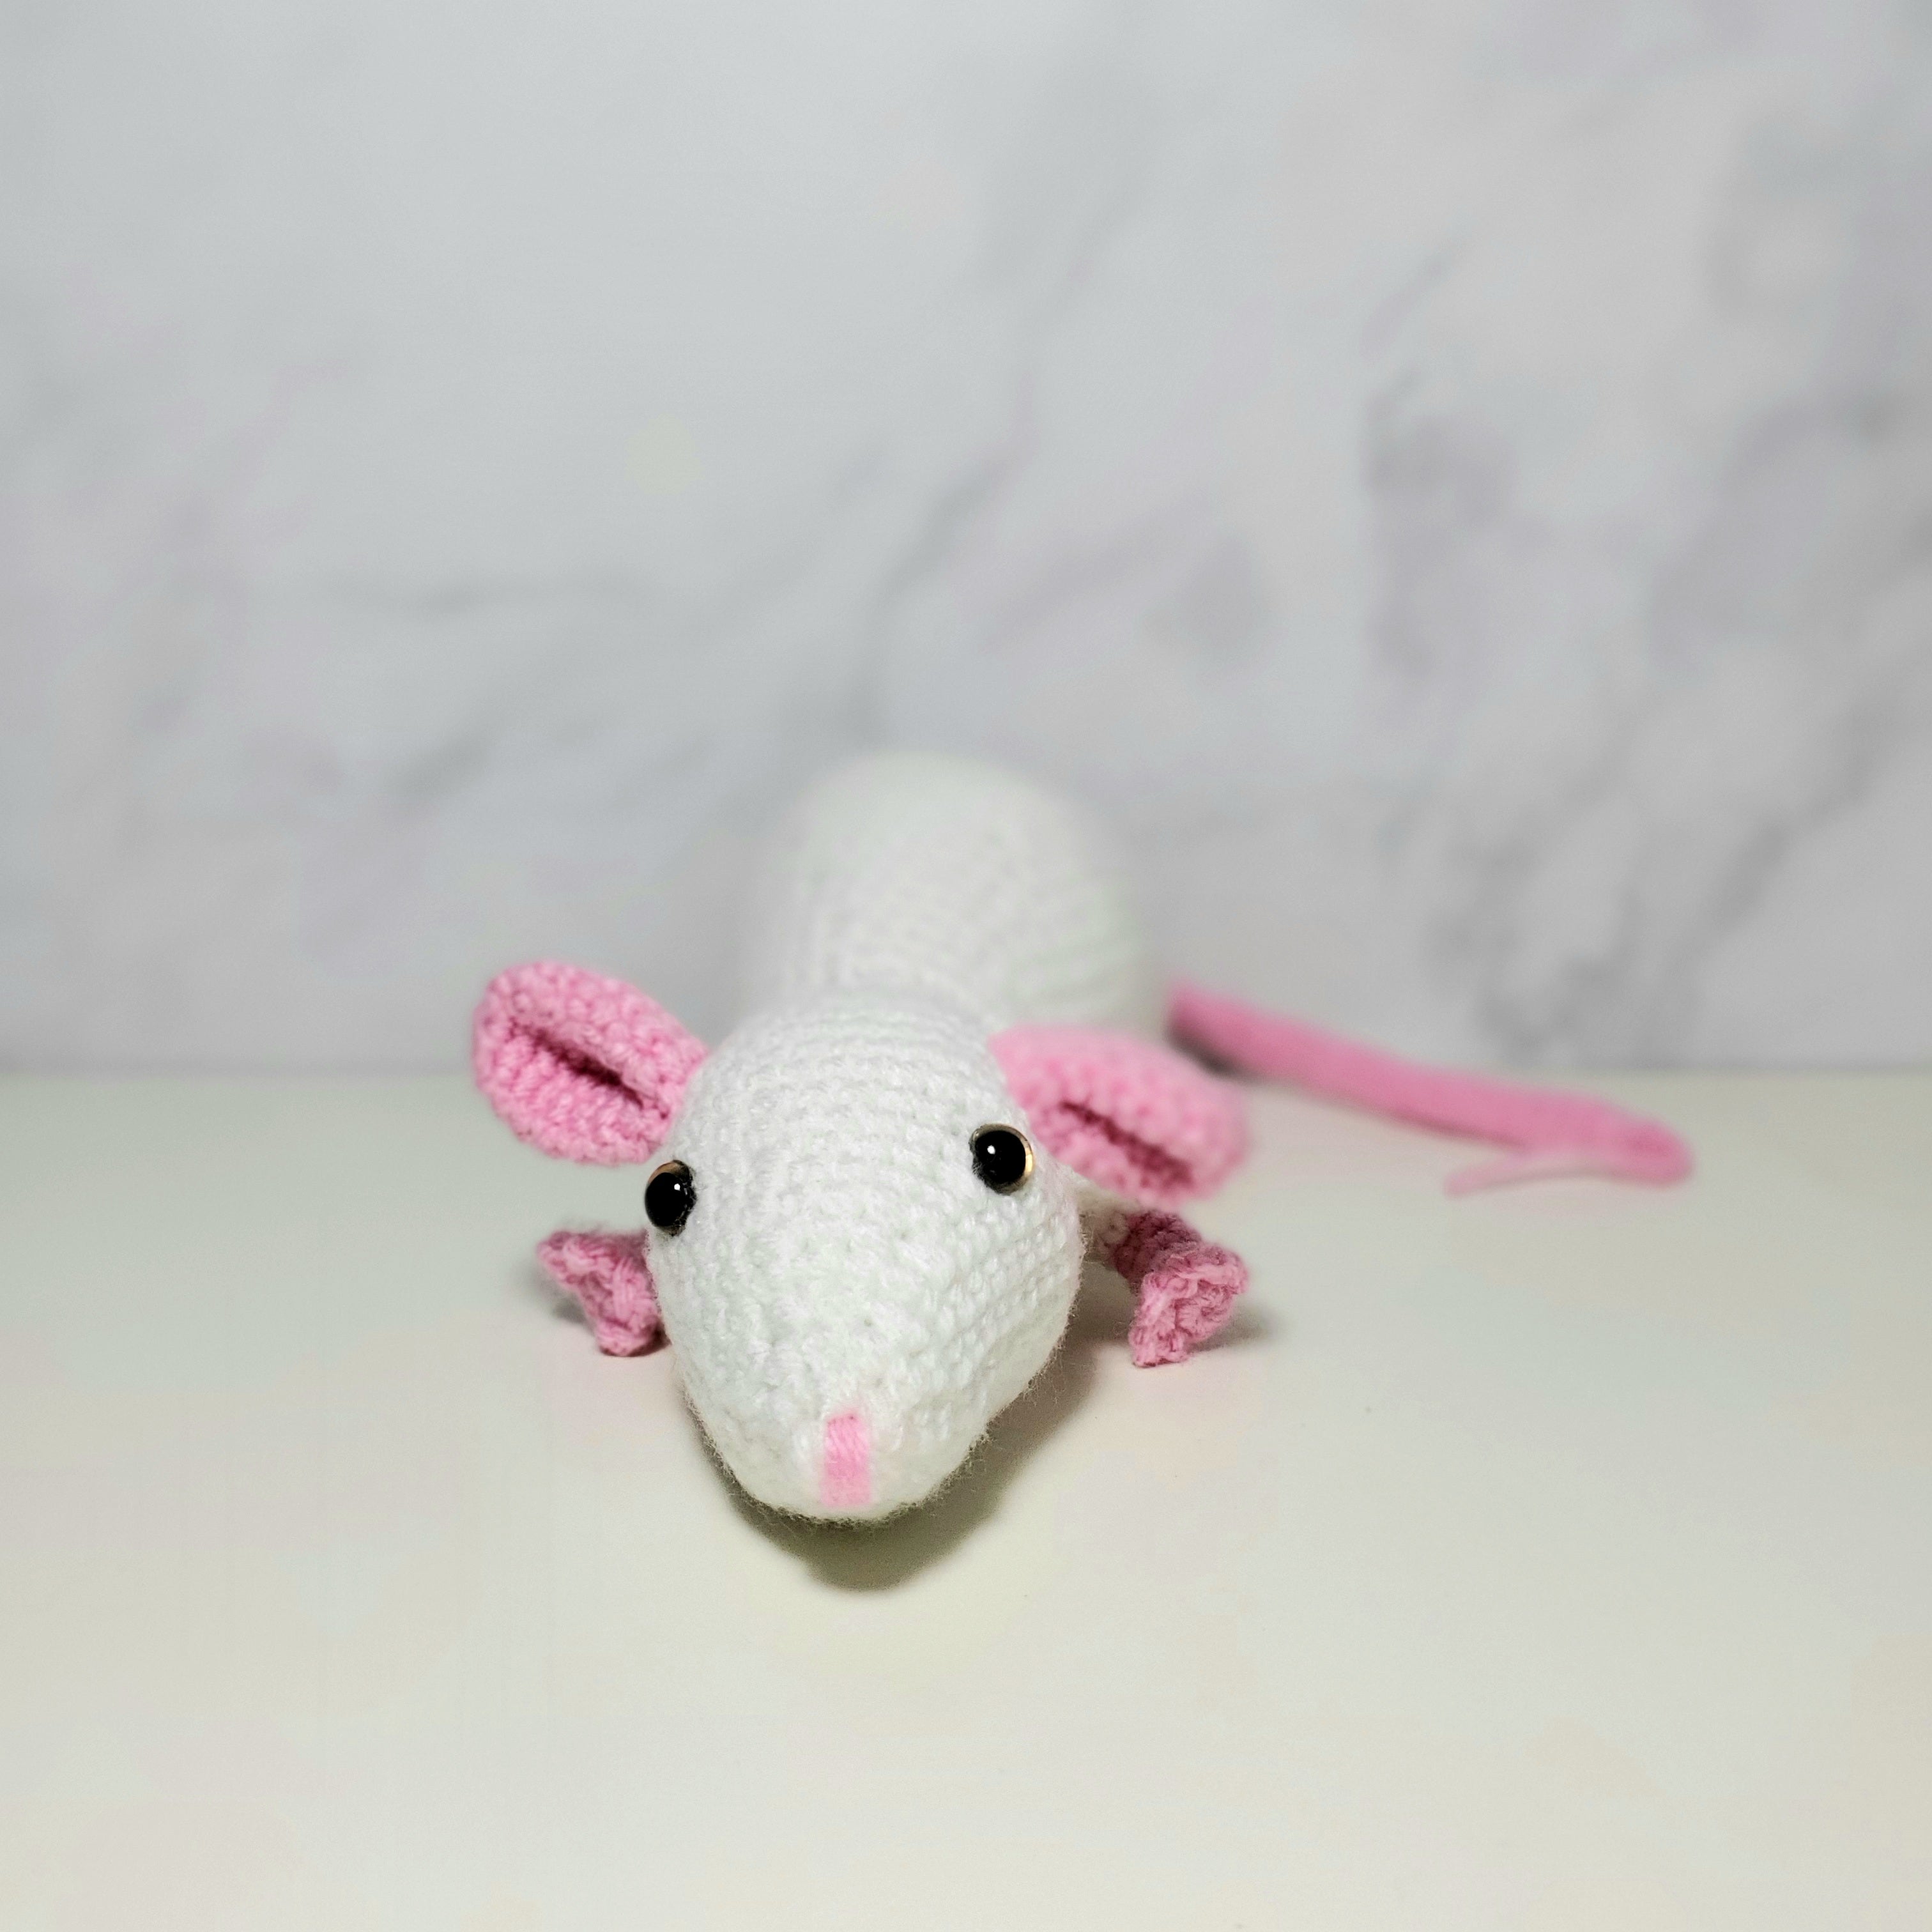 White Mouse Plush Toy